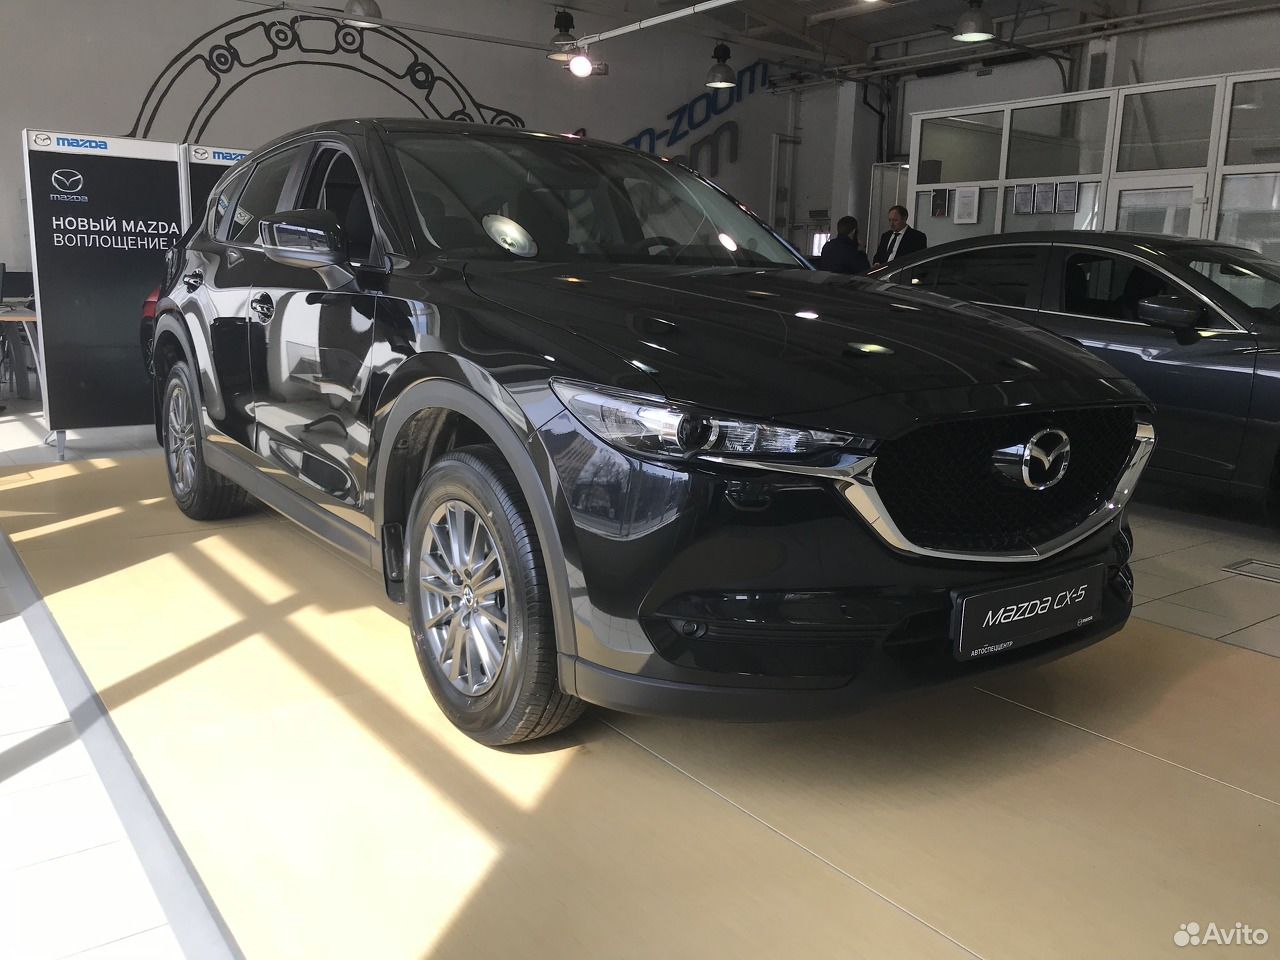 Мазда сх5 черная. Cx5 Мазда 2018 черный. Mazda CX 5 черная. Новая Мазда сх5 черная.